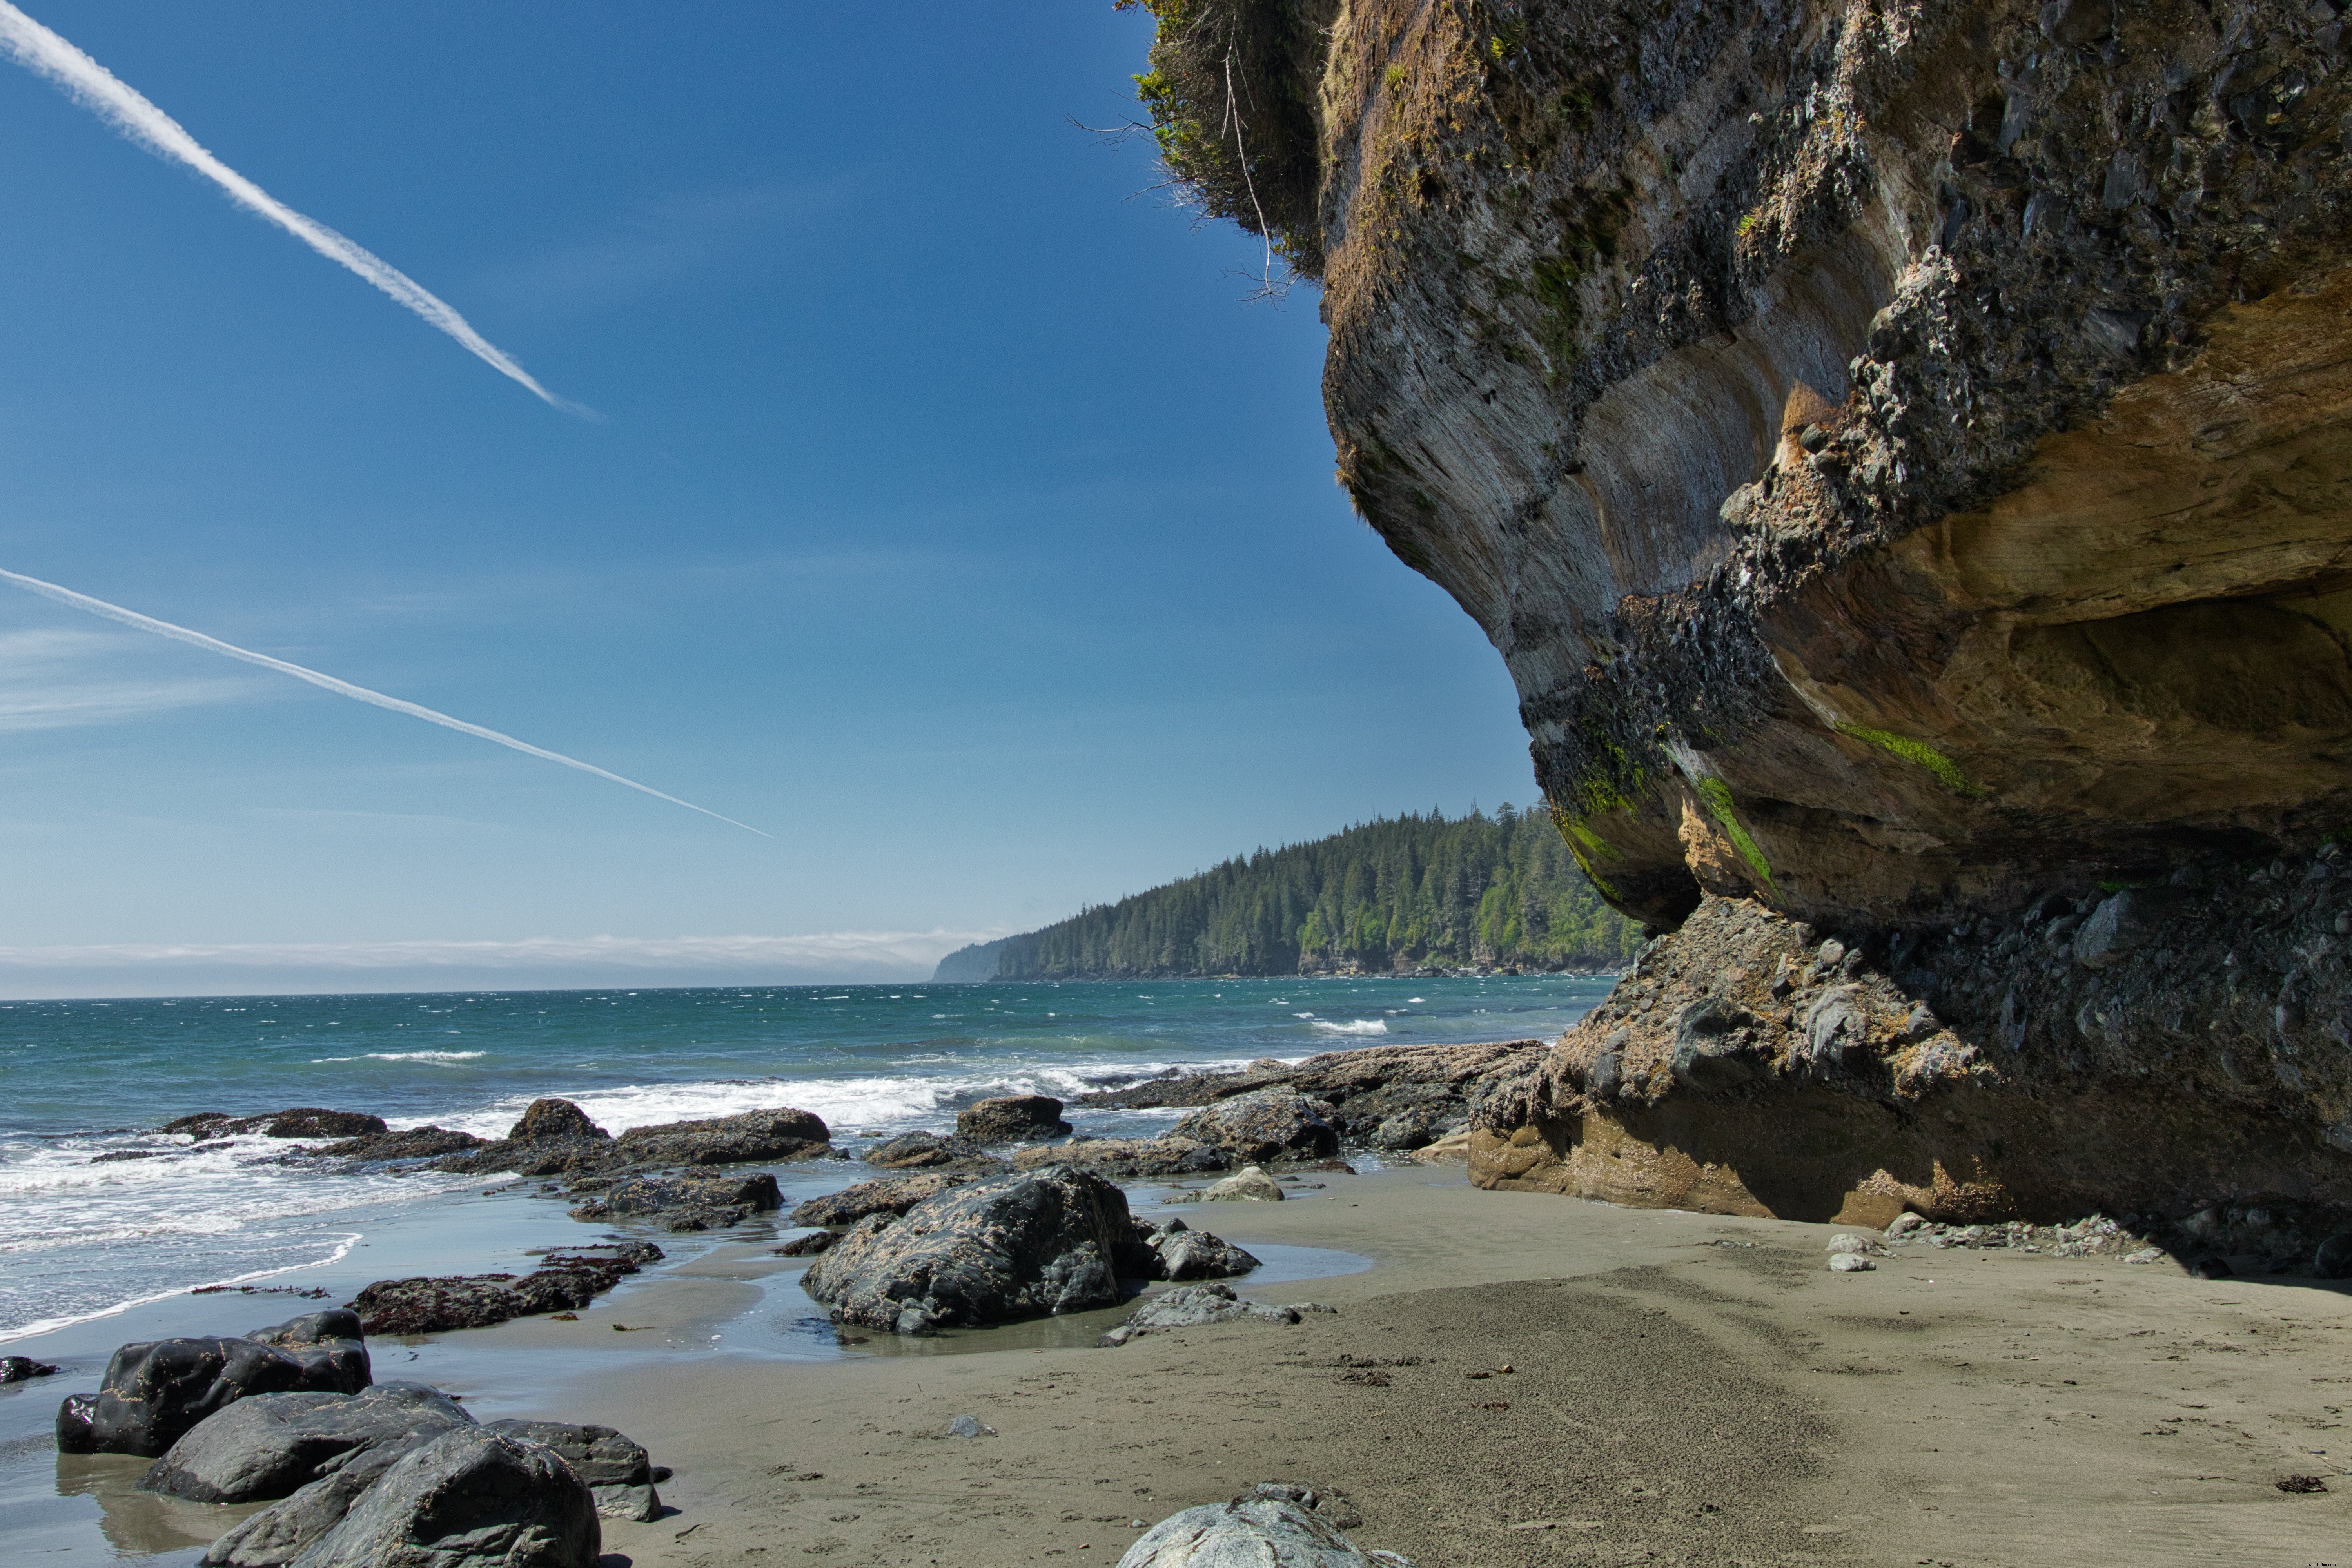 Scogliera rocciosa sospesa su una spiaggia sabbiosa vicino all acqua blu foto 